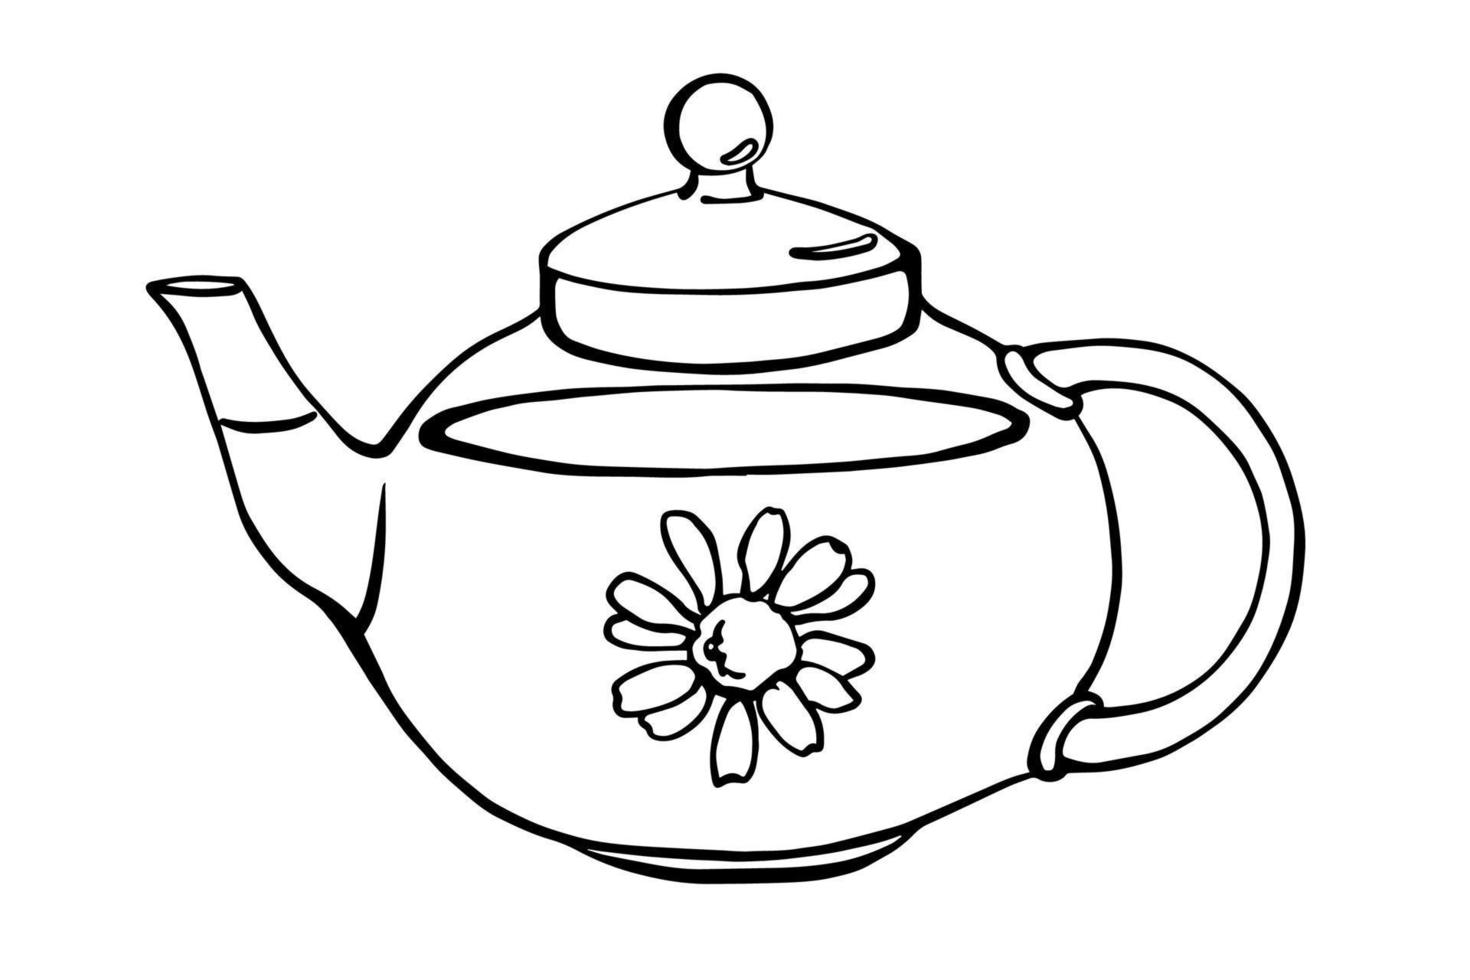 design de ilustração vetorial de chá de camomila. delineie o desenho transparente do bule de chá com camomila dentro. vetor